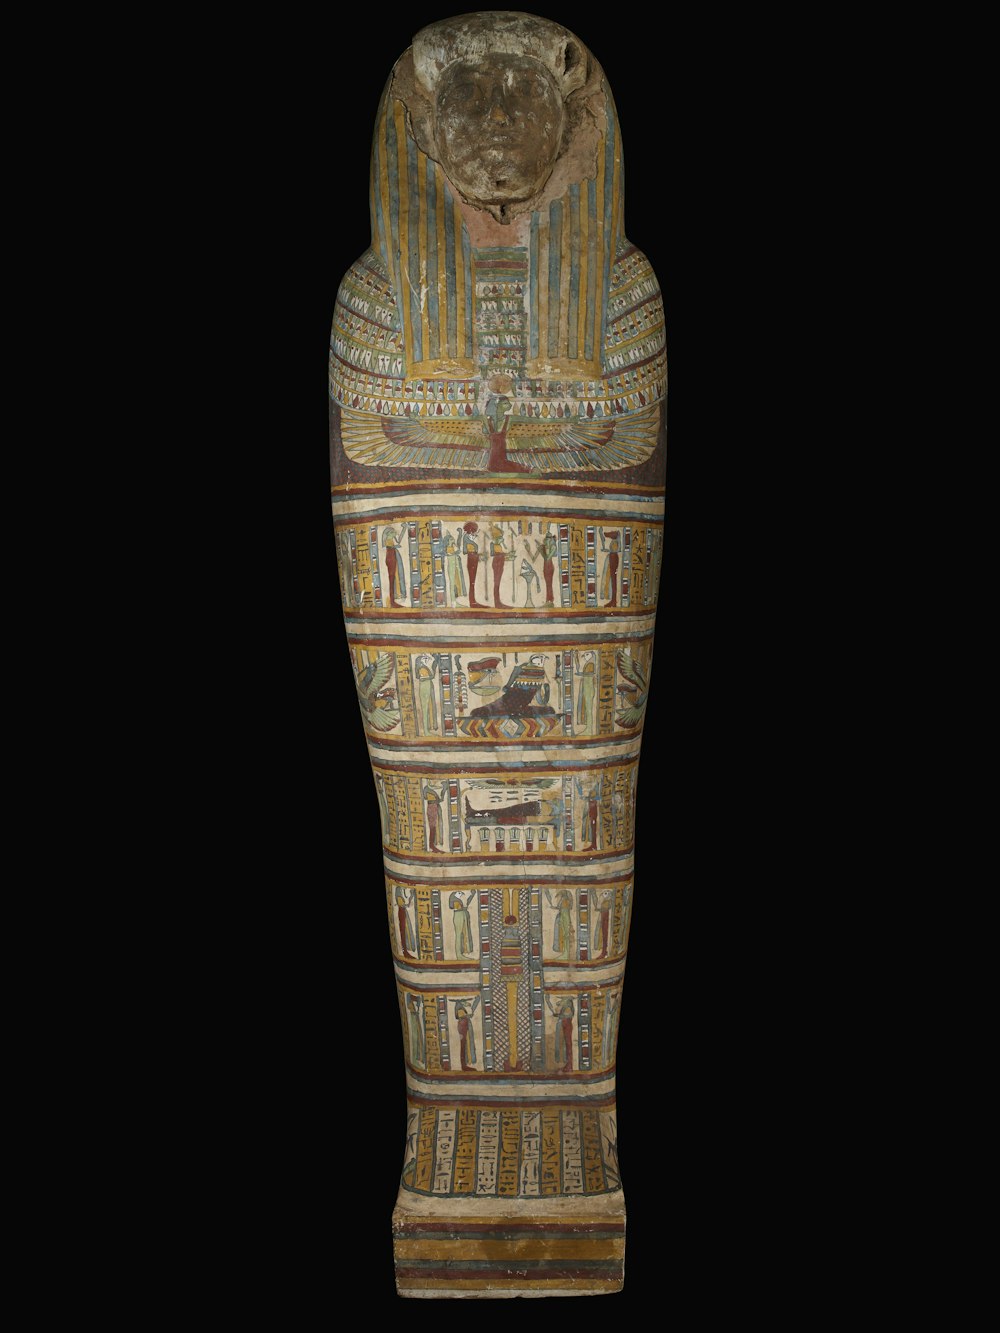 Una statua egiziana di un dio egizio su uno sfondo nero